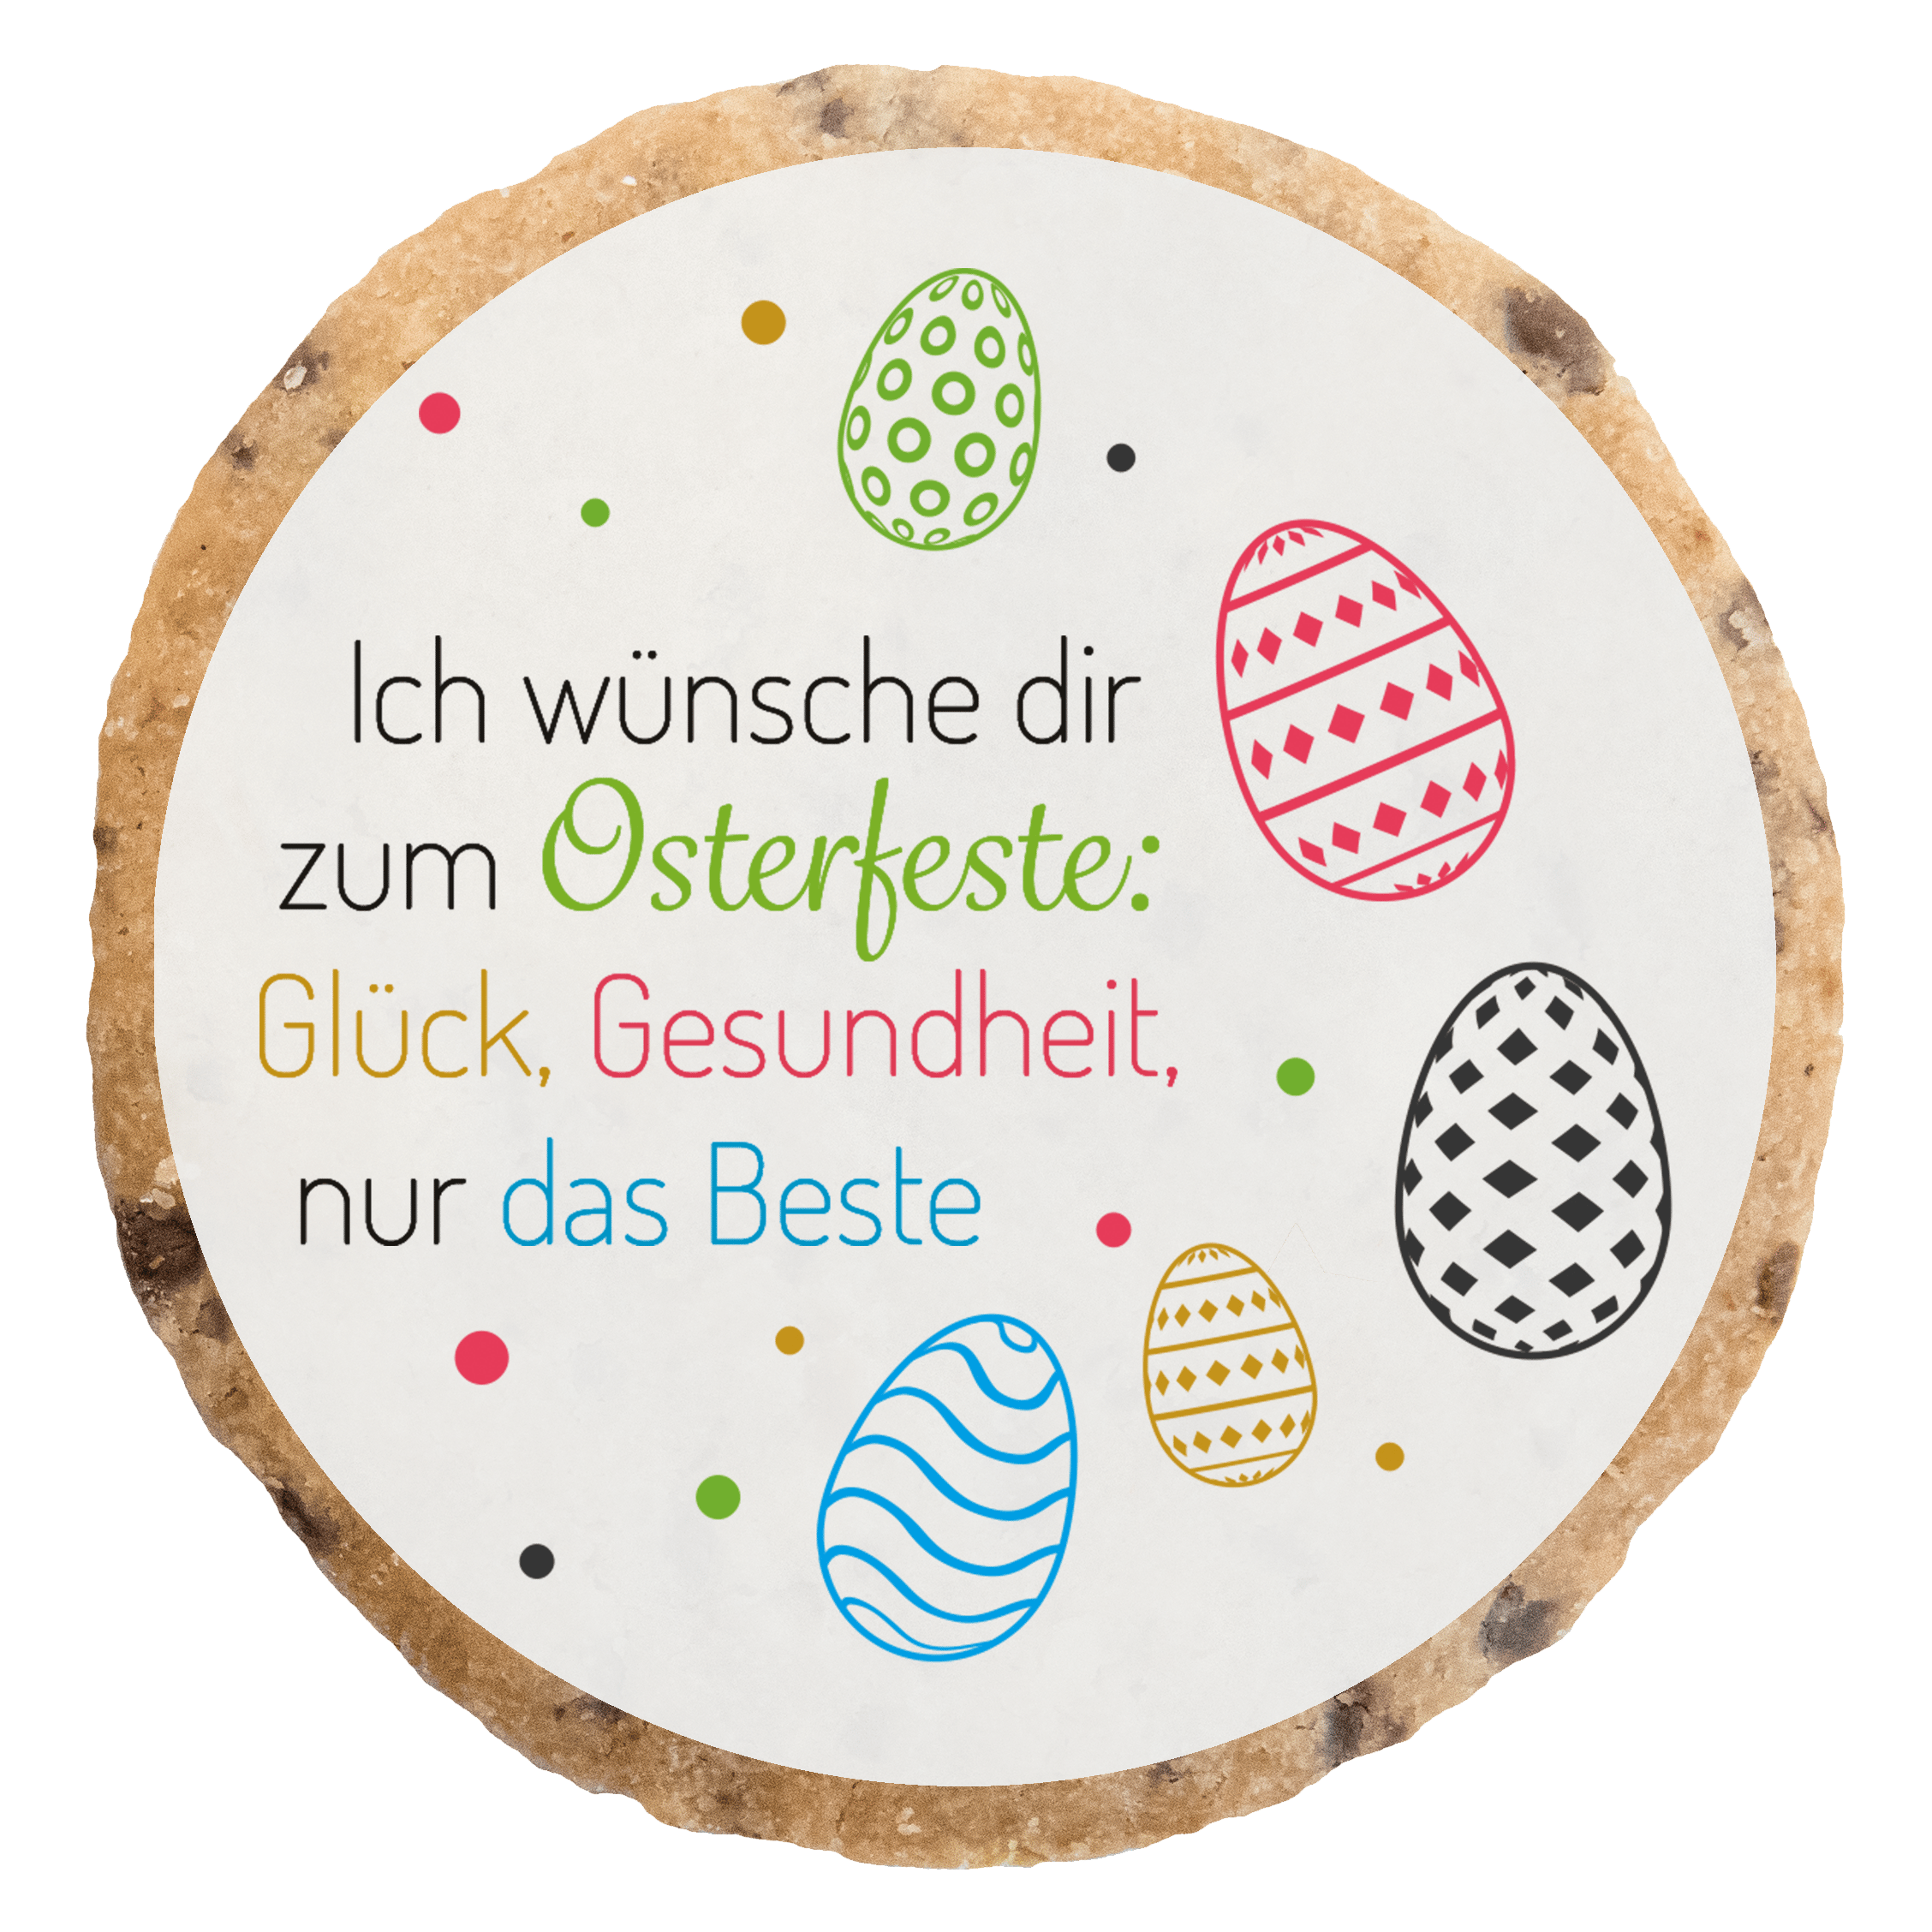 "Ich wünsche dir zum Osterfeste" MotivKEKS